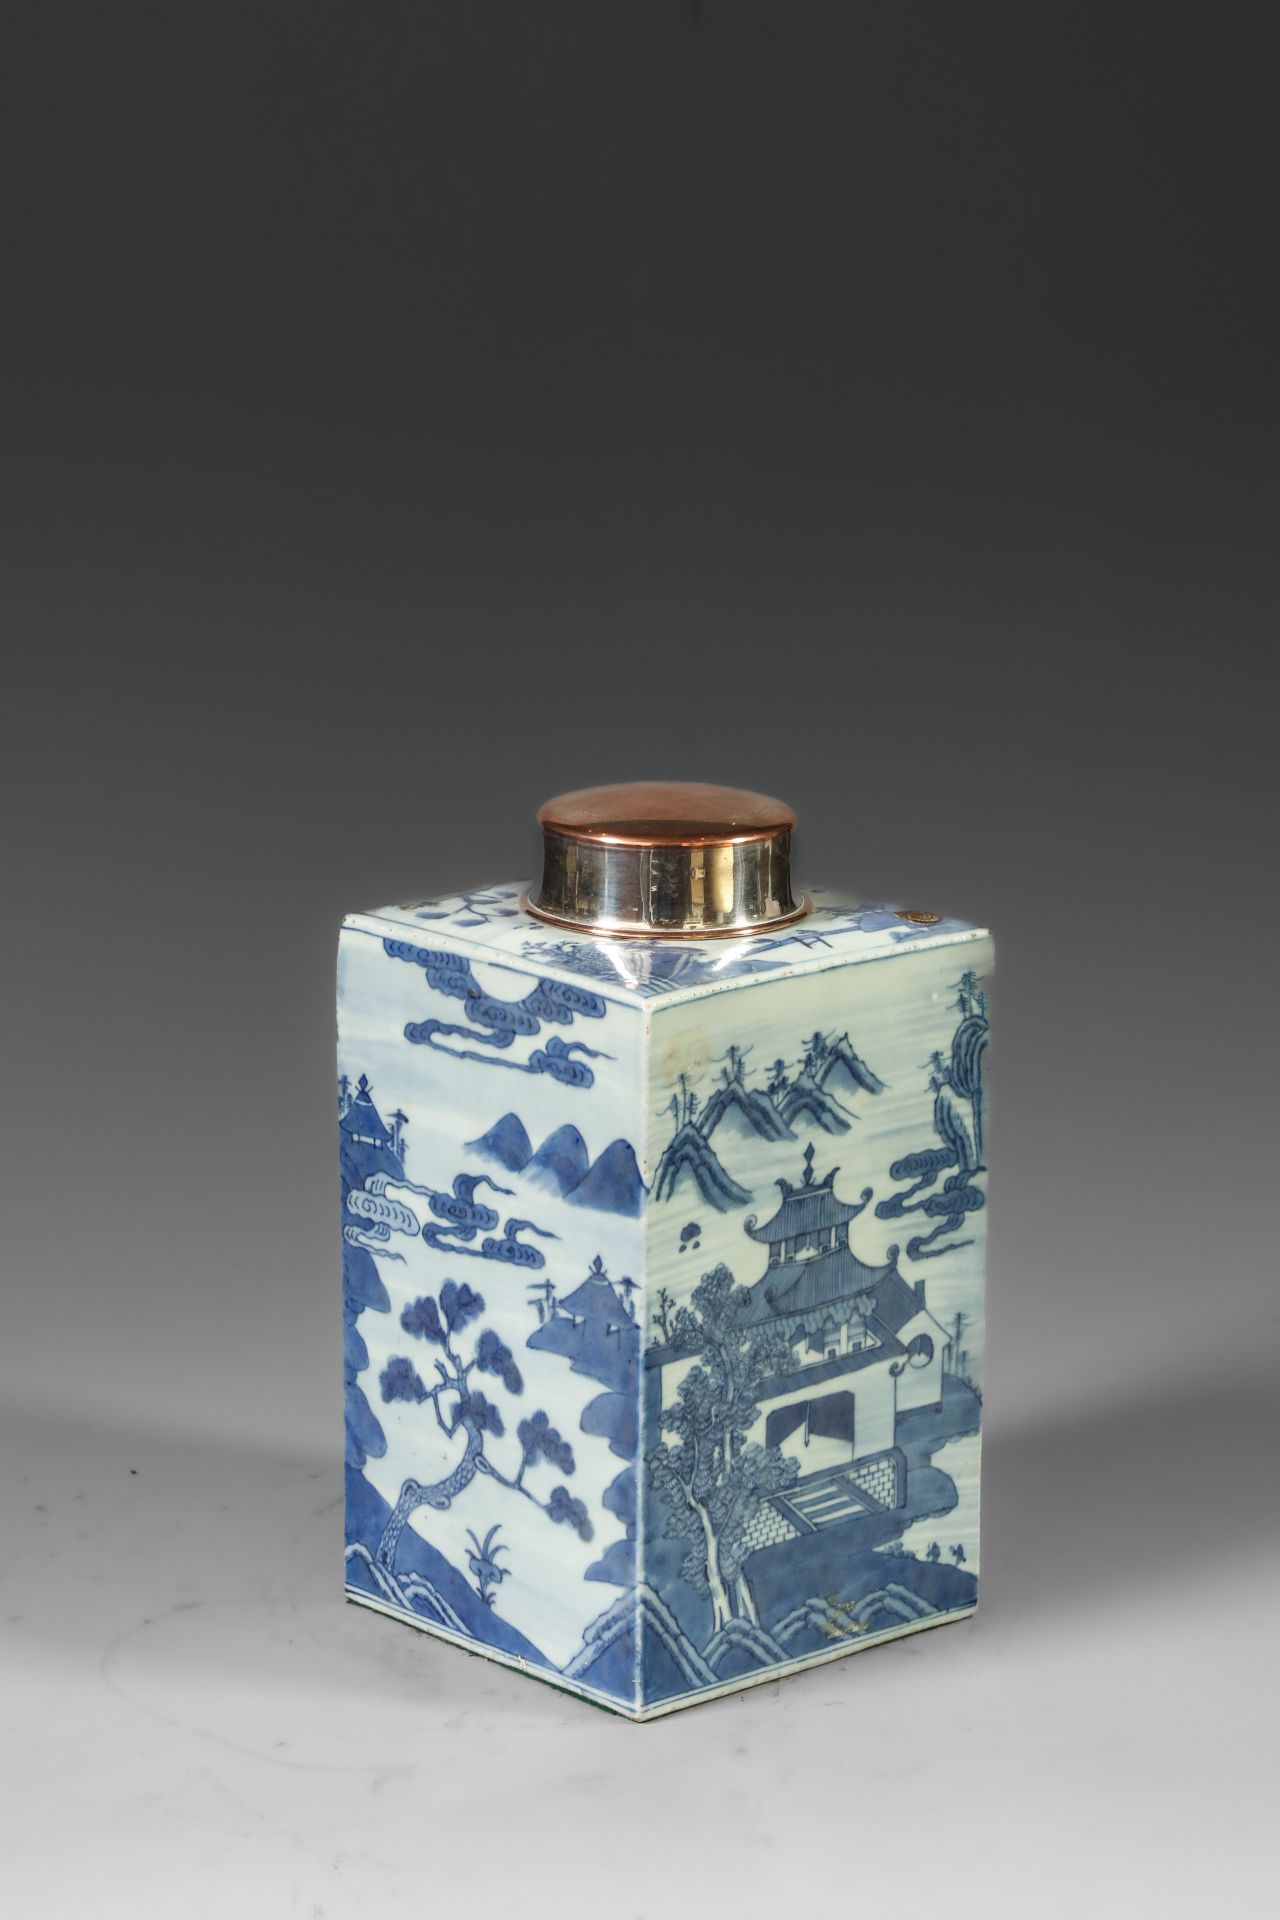 Suite de neuf pots à thé quadrangulaire en porcelaine blanche décoré en bleu sous couverte de - Image 43 of 47